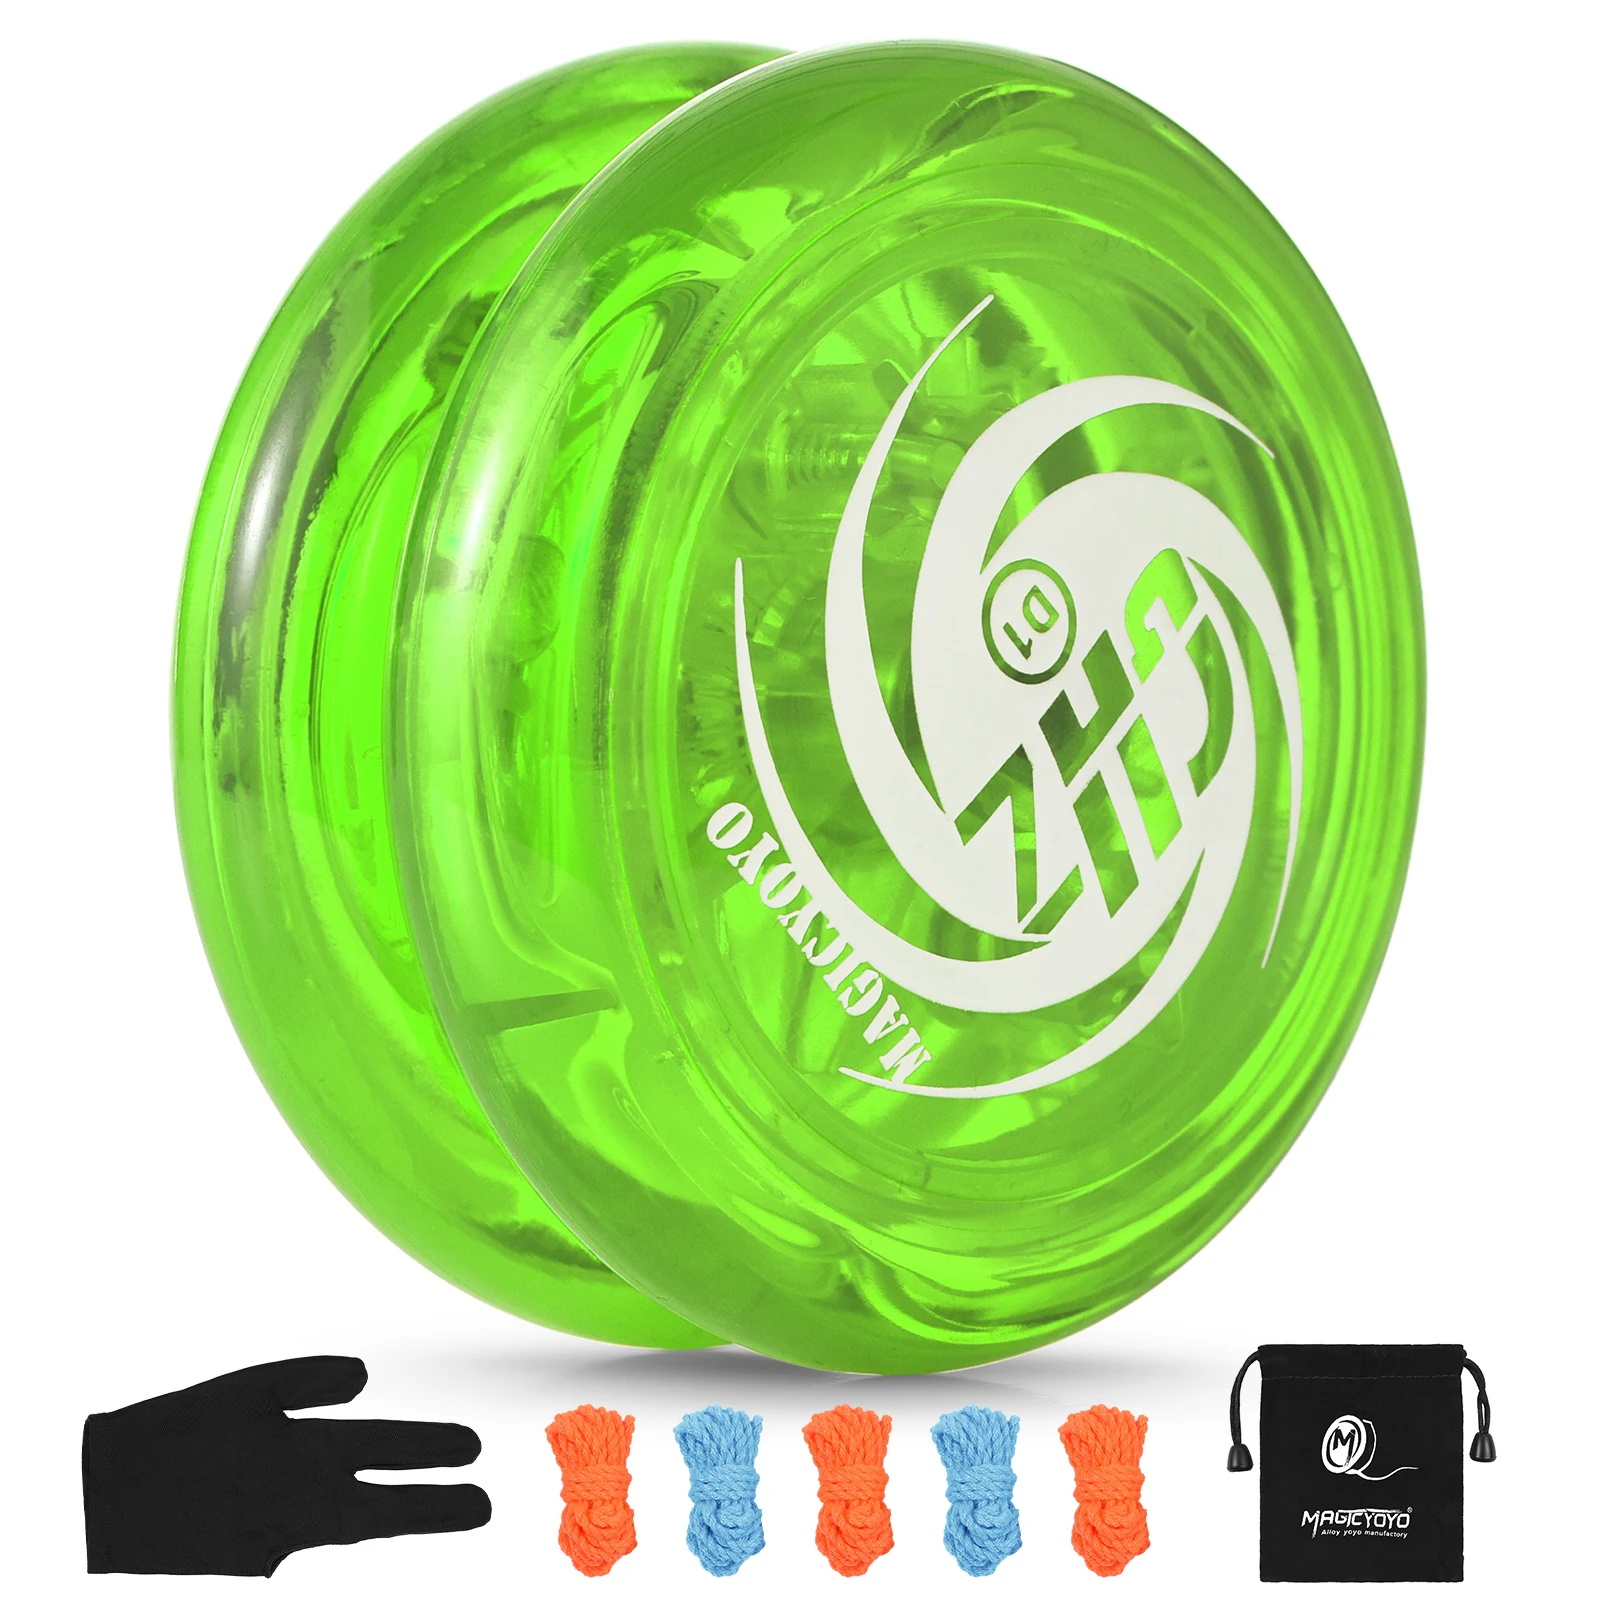 

Йо-Йо для детей, мяч Йо-Йо с 5 сменными нитями, сумка для хранения перчаток для начинающих